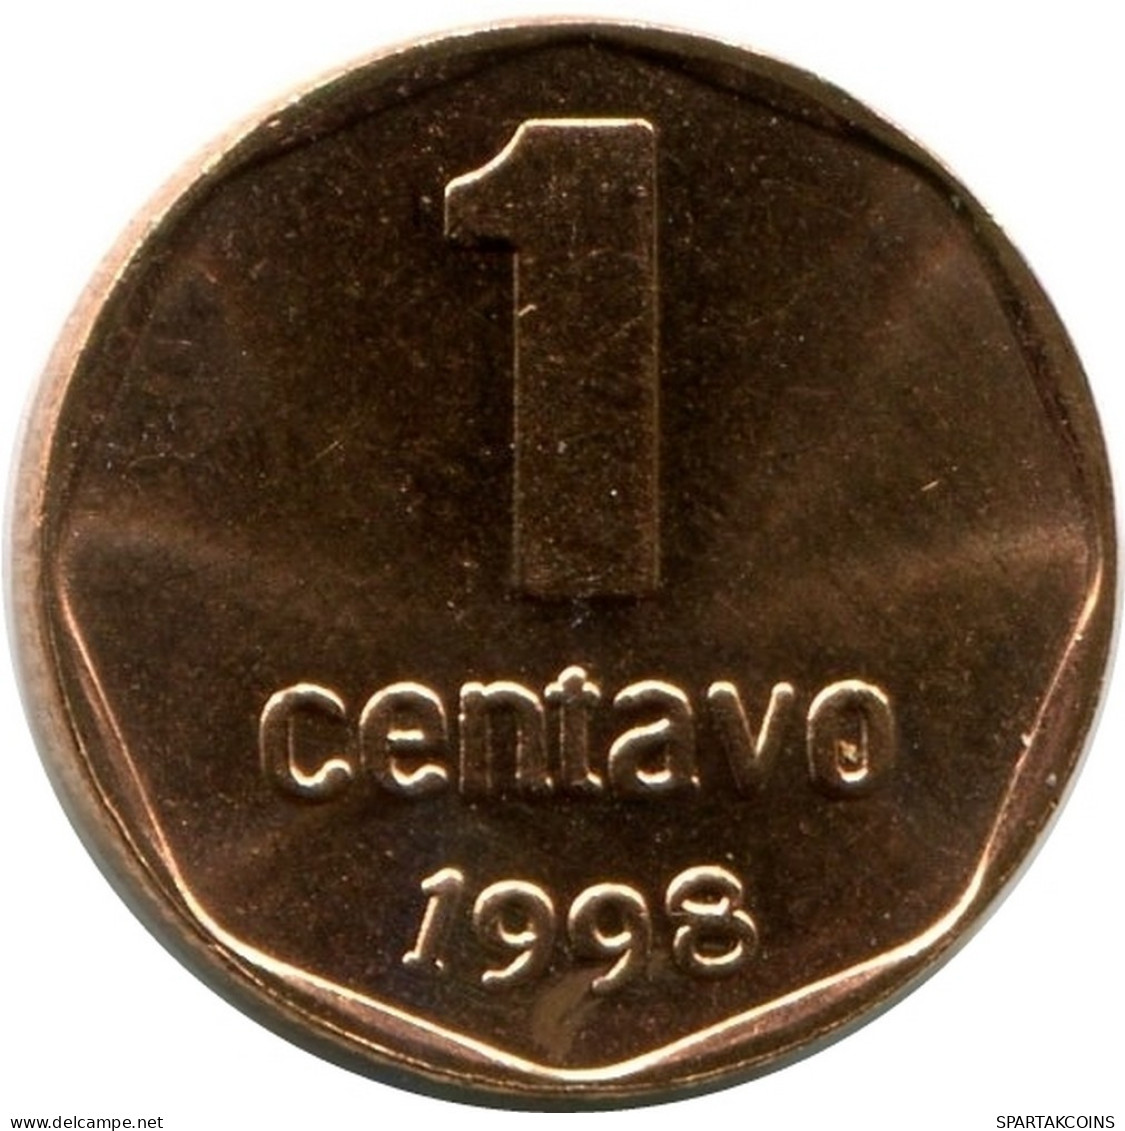 1 CENTAVO 1998 ARGENTINIEN ARGENTINA Münze UNC #M10140.D.A - Argentina